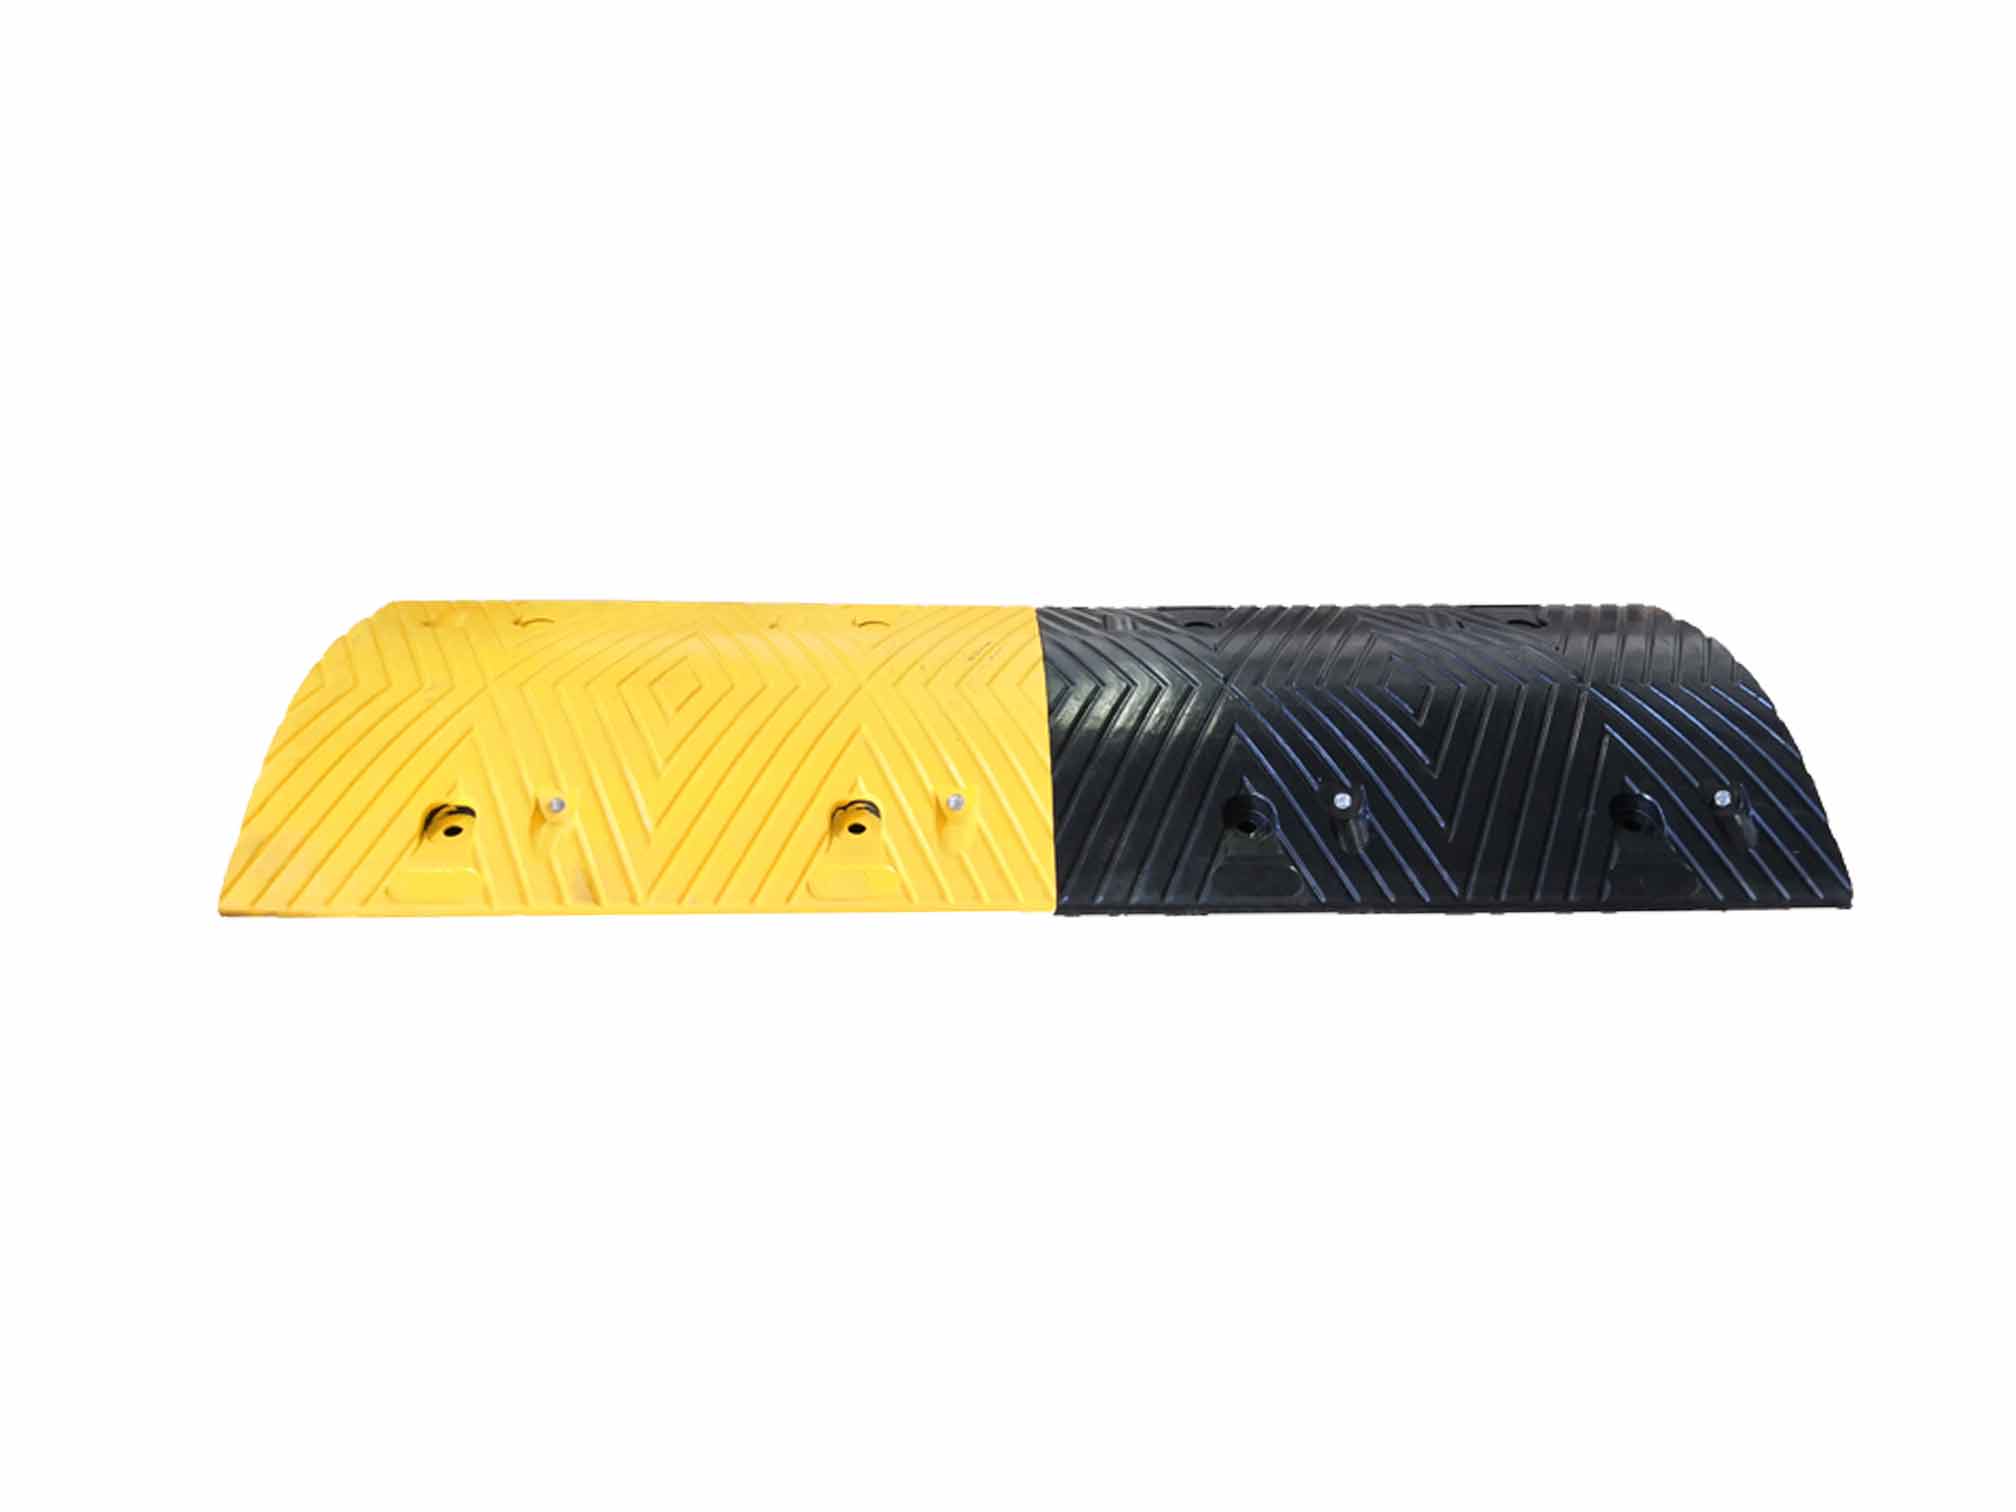 Modello DH - Rallentatori stradali in gomma nera e strisce gialle rifrangenti - DOSSI